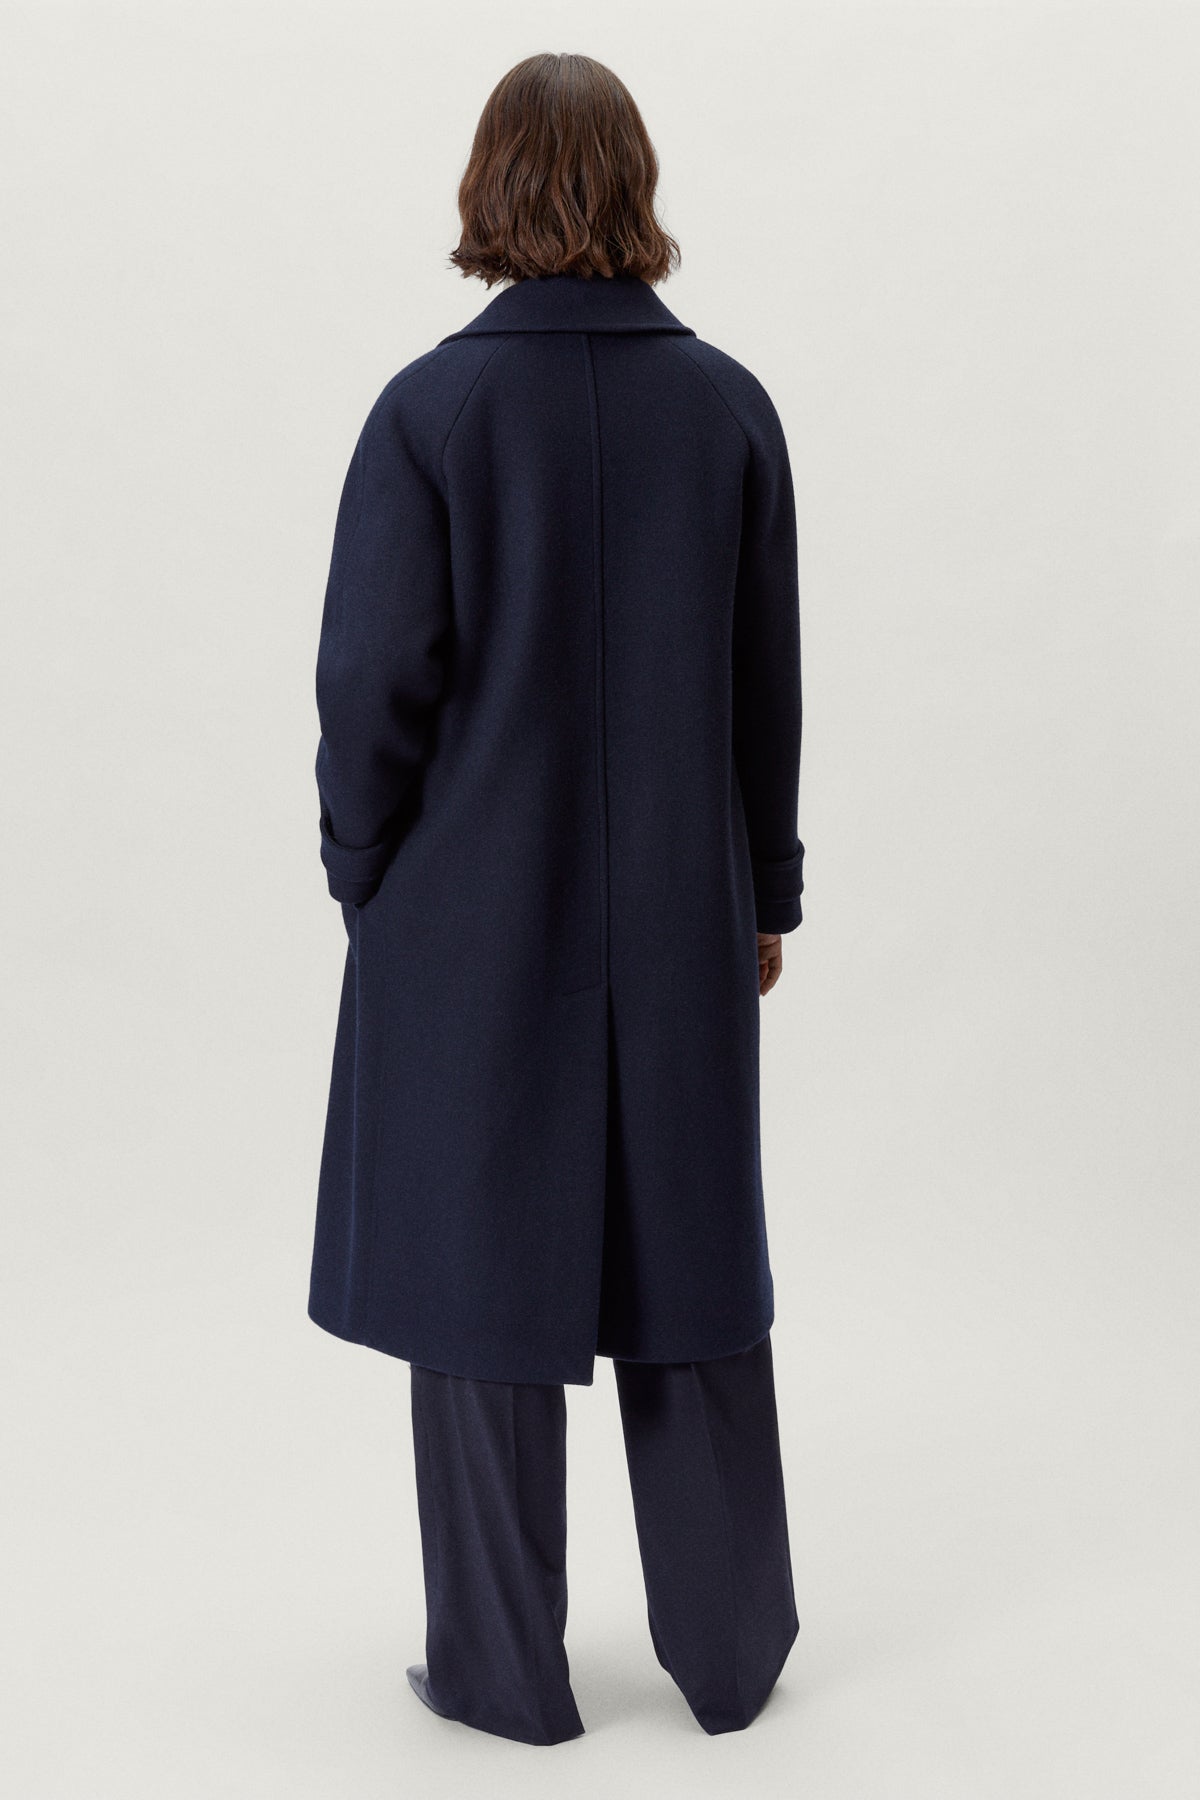 Blue Navy | The Woolen Coat